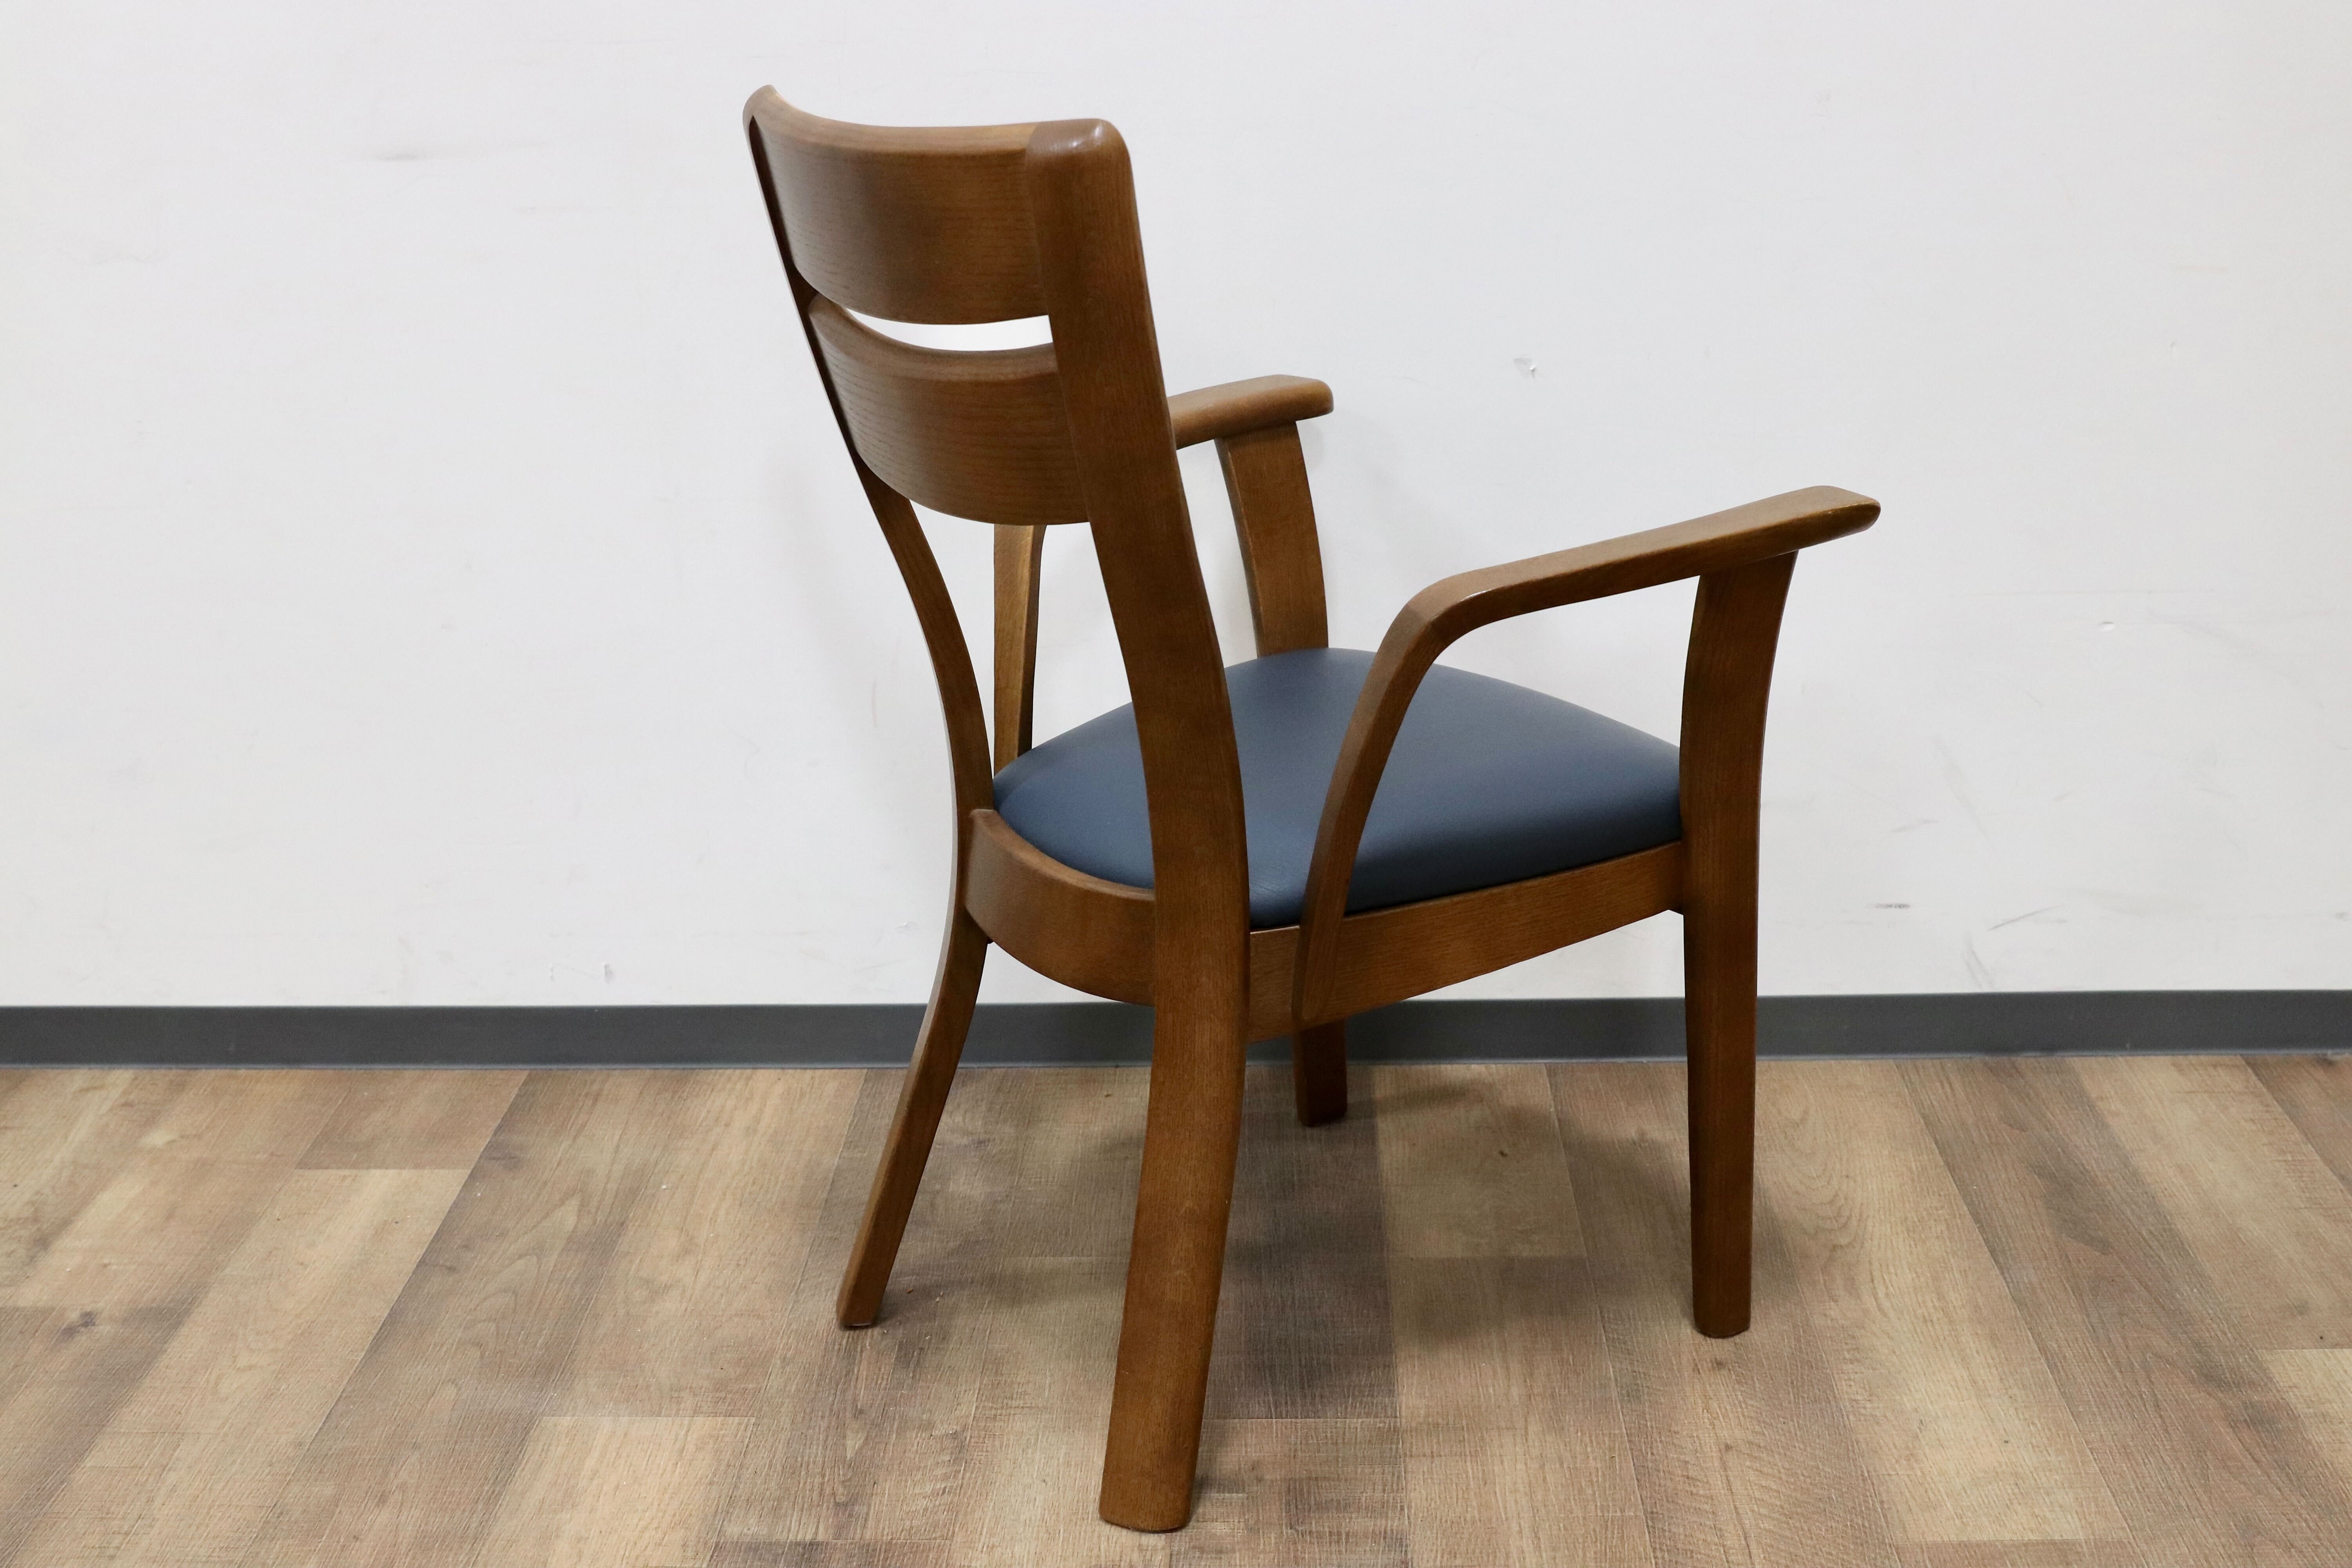 ご検討くださいませ飛騨 柏木工 ウォールナット無垢材 アームチェア 北欧モダン 職人技 工芸椅子